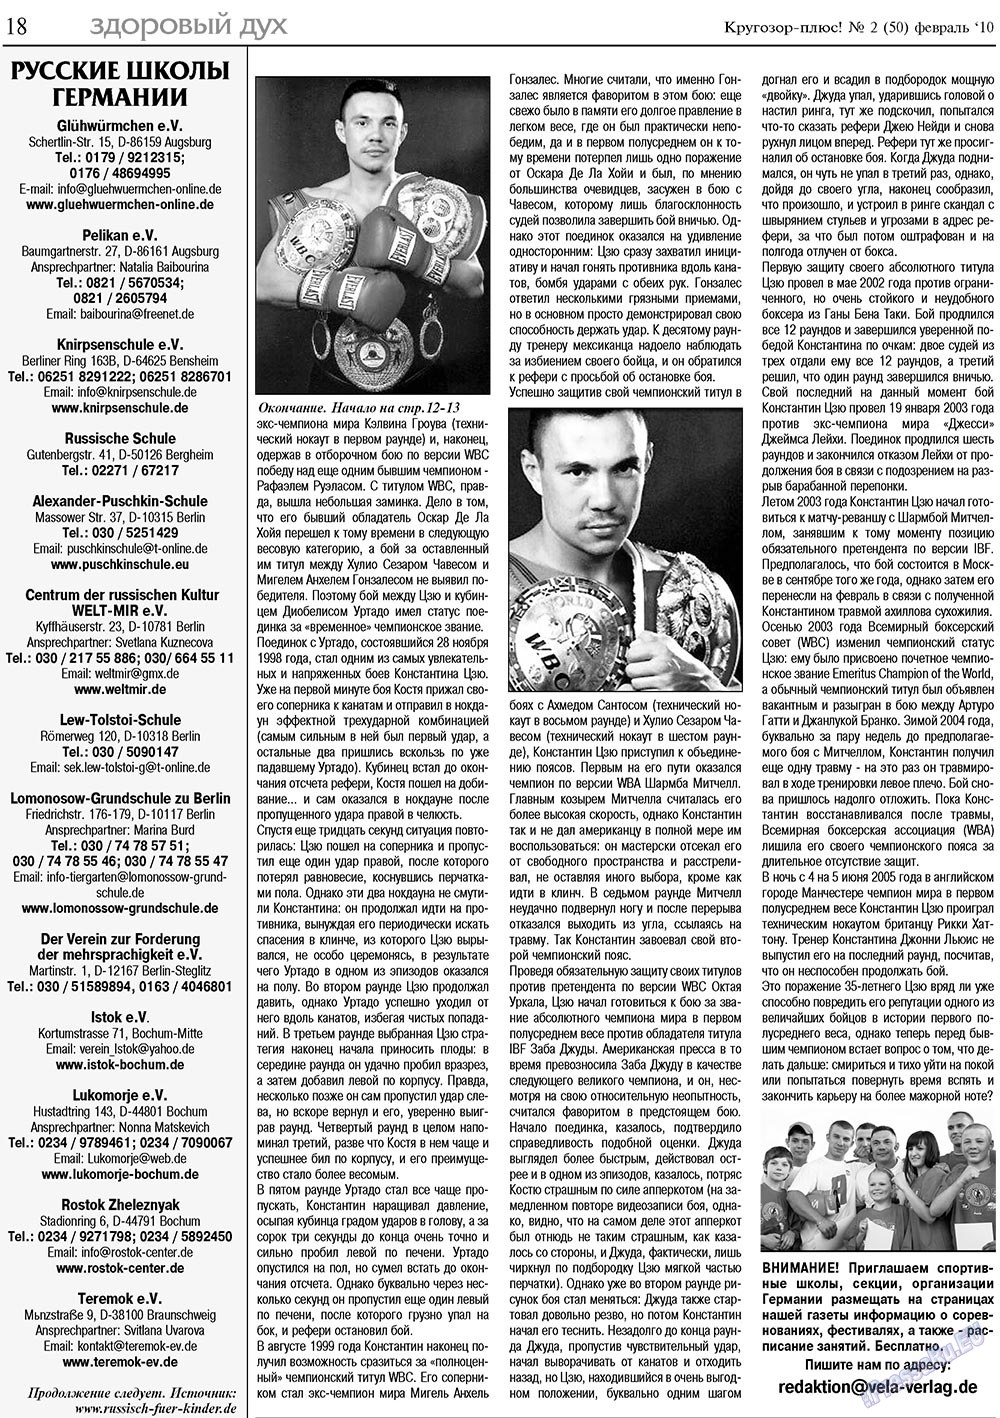 Кругозор плюс!, газета. 2010 №2 стр.18